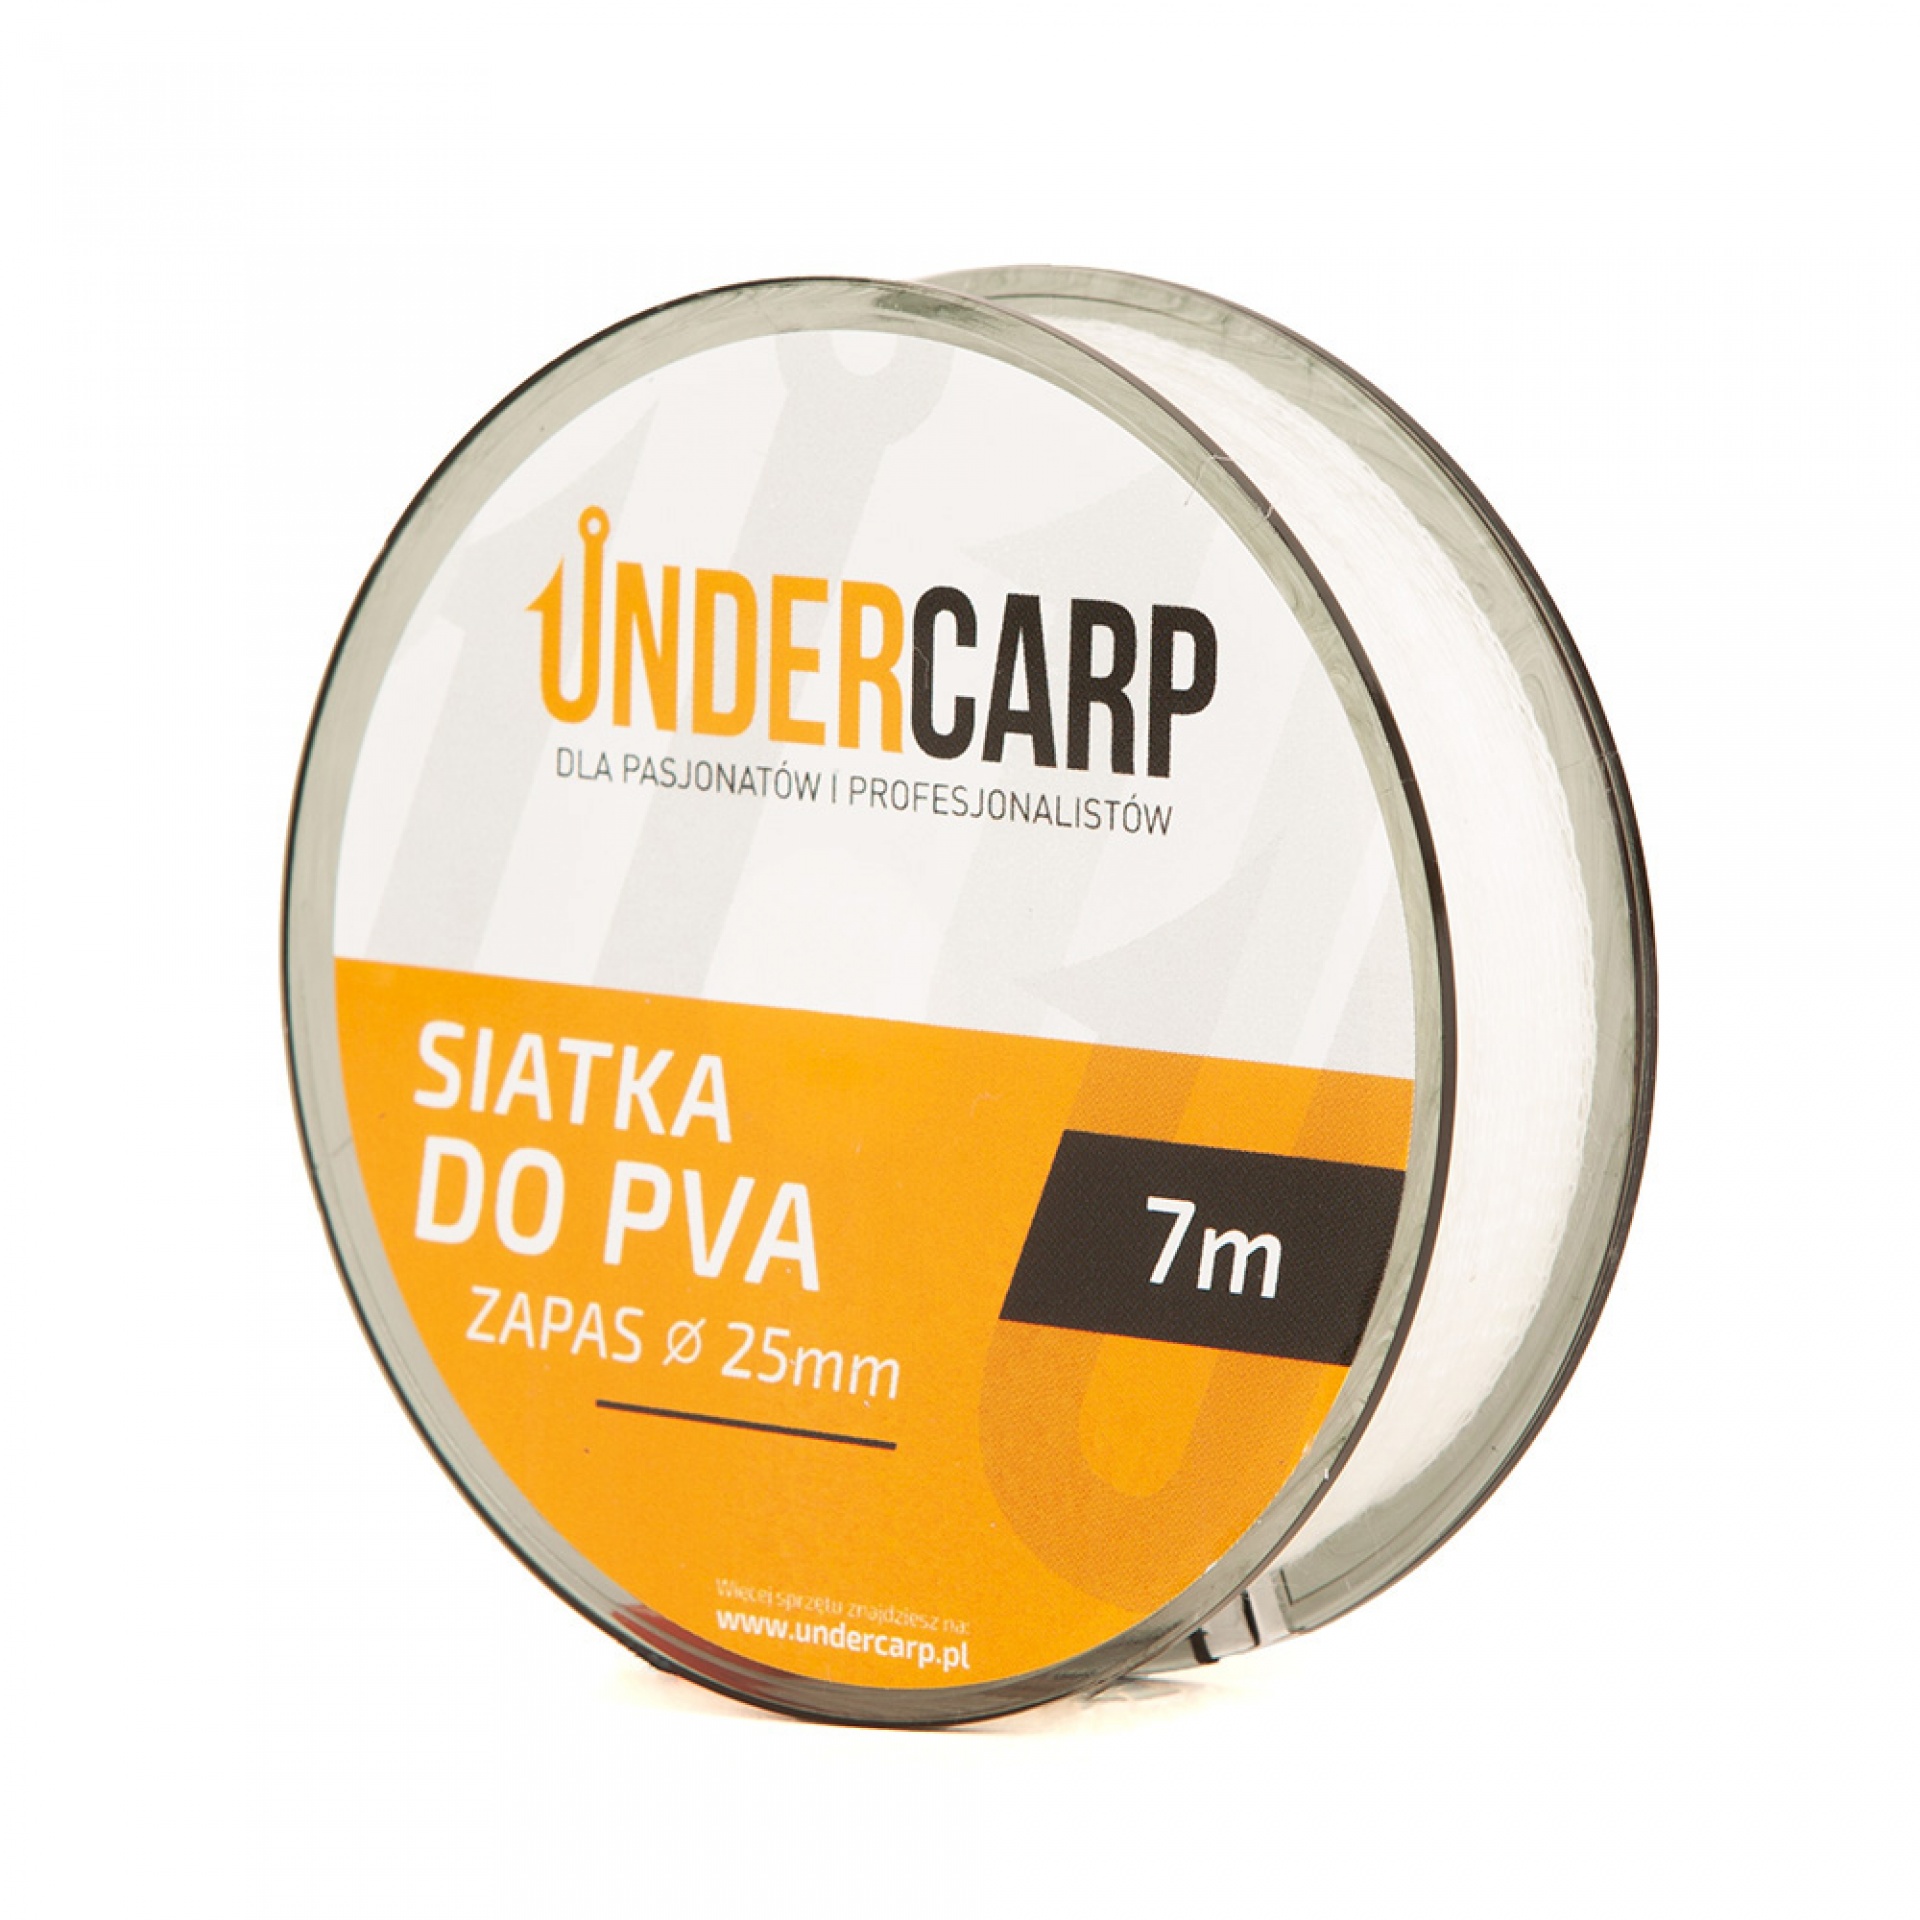 UnderCarp - Rete PVA di Ricambio 25mm 7m